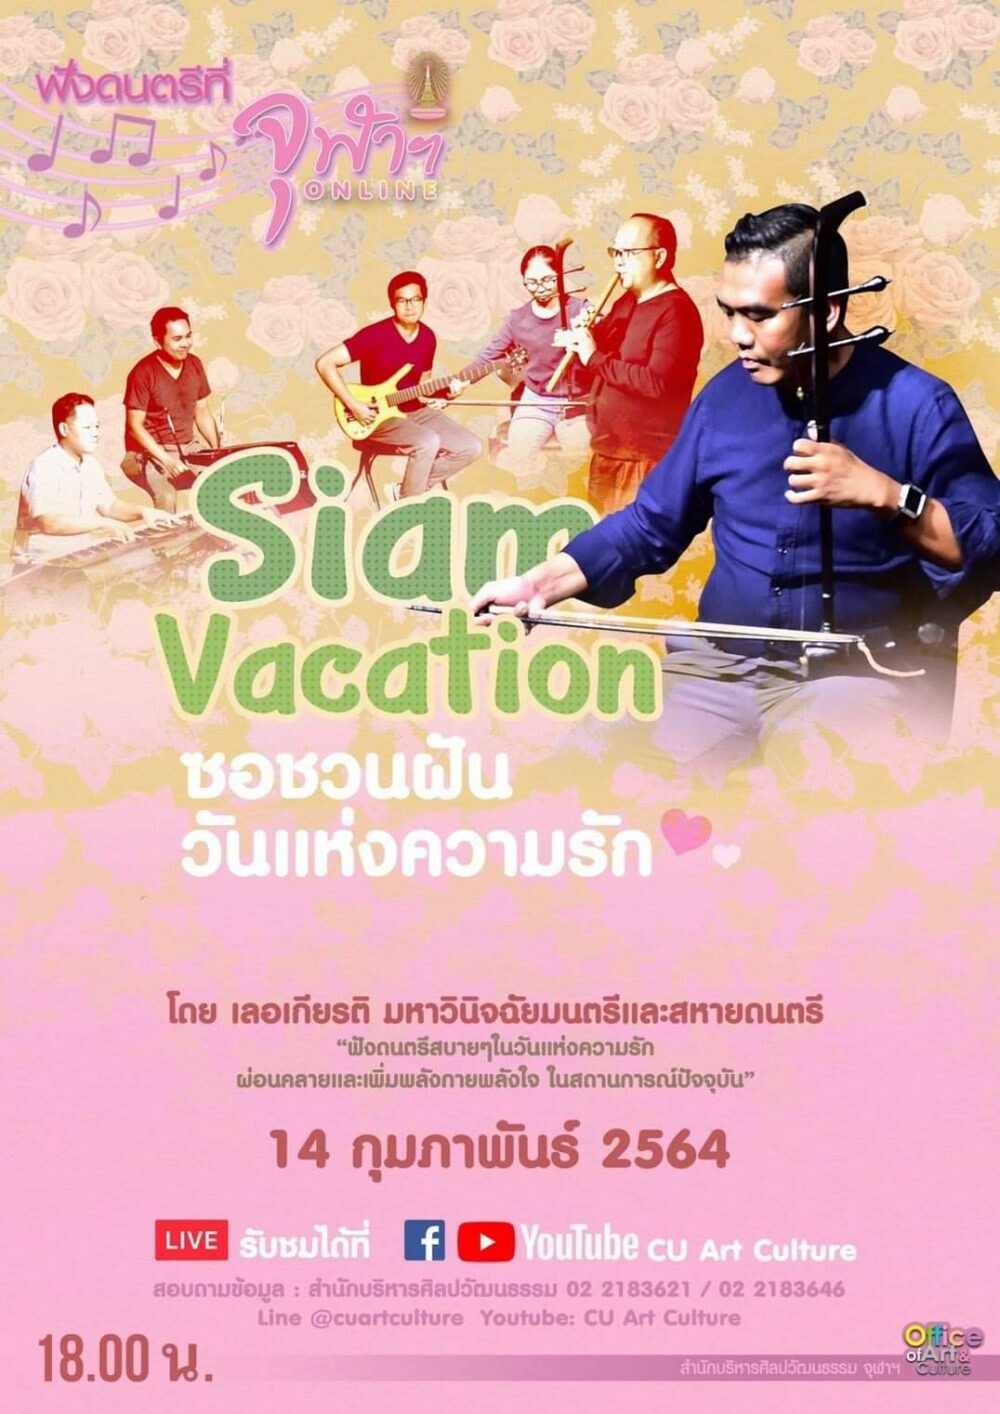 ฟังดนตรีที่จุฬาฯ ONLINE "ซอชวนฝัน วันแห่งความรัก" โดยวง Siam Vacation